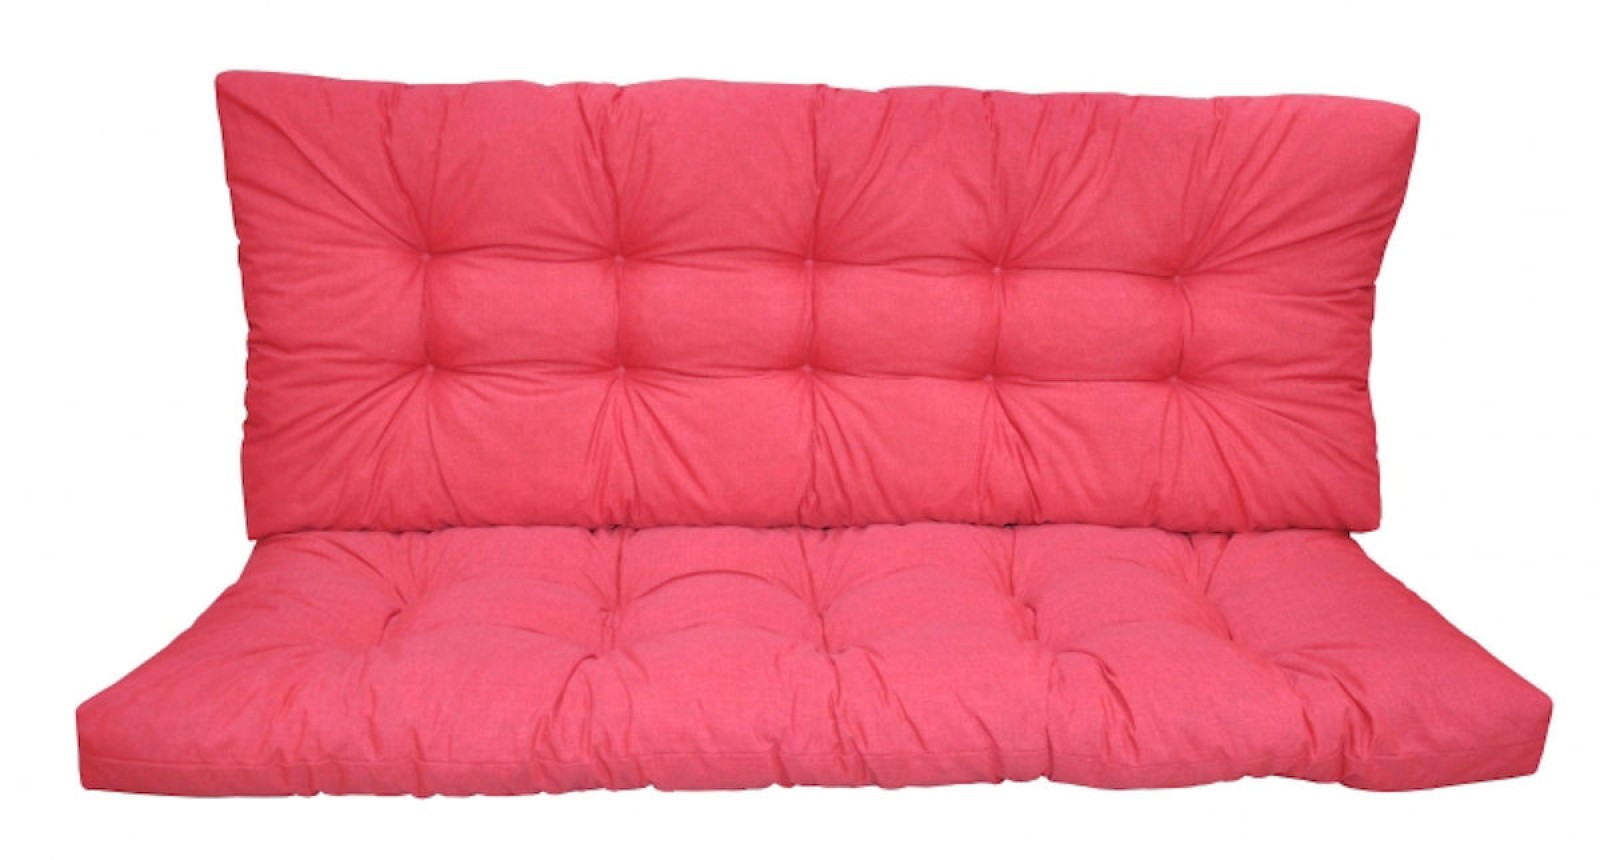 Premium Kissen , Polster für Hollywoodschaukel , Gartenbank Color rosa antico (alt rosa) , 5 Größen zur Wahl